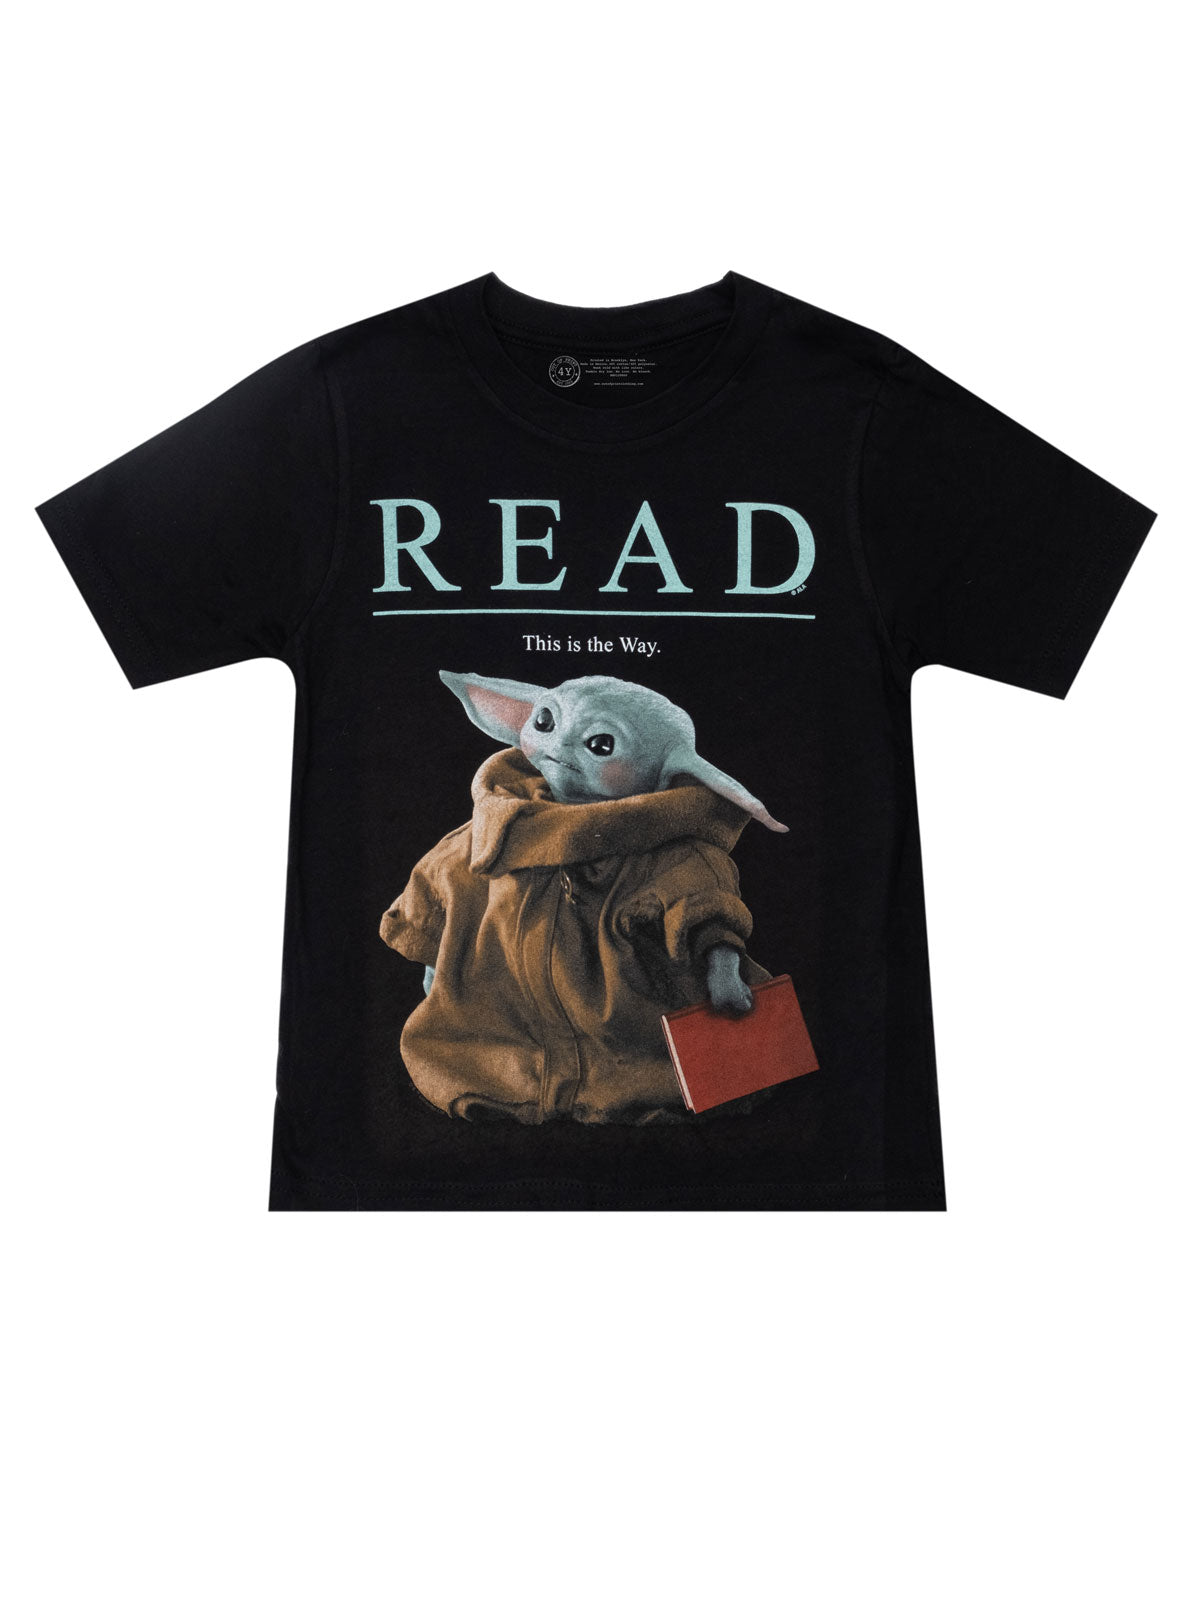 Afskrække indendørs telt Star Wars Grogu™ READ kids t-shirt — Out of Print